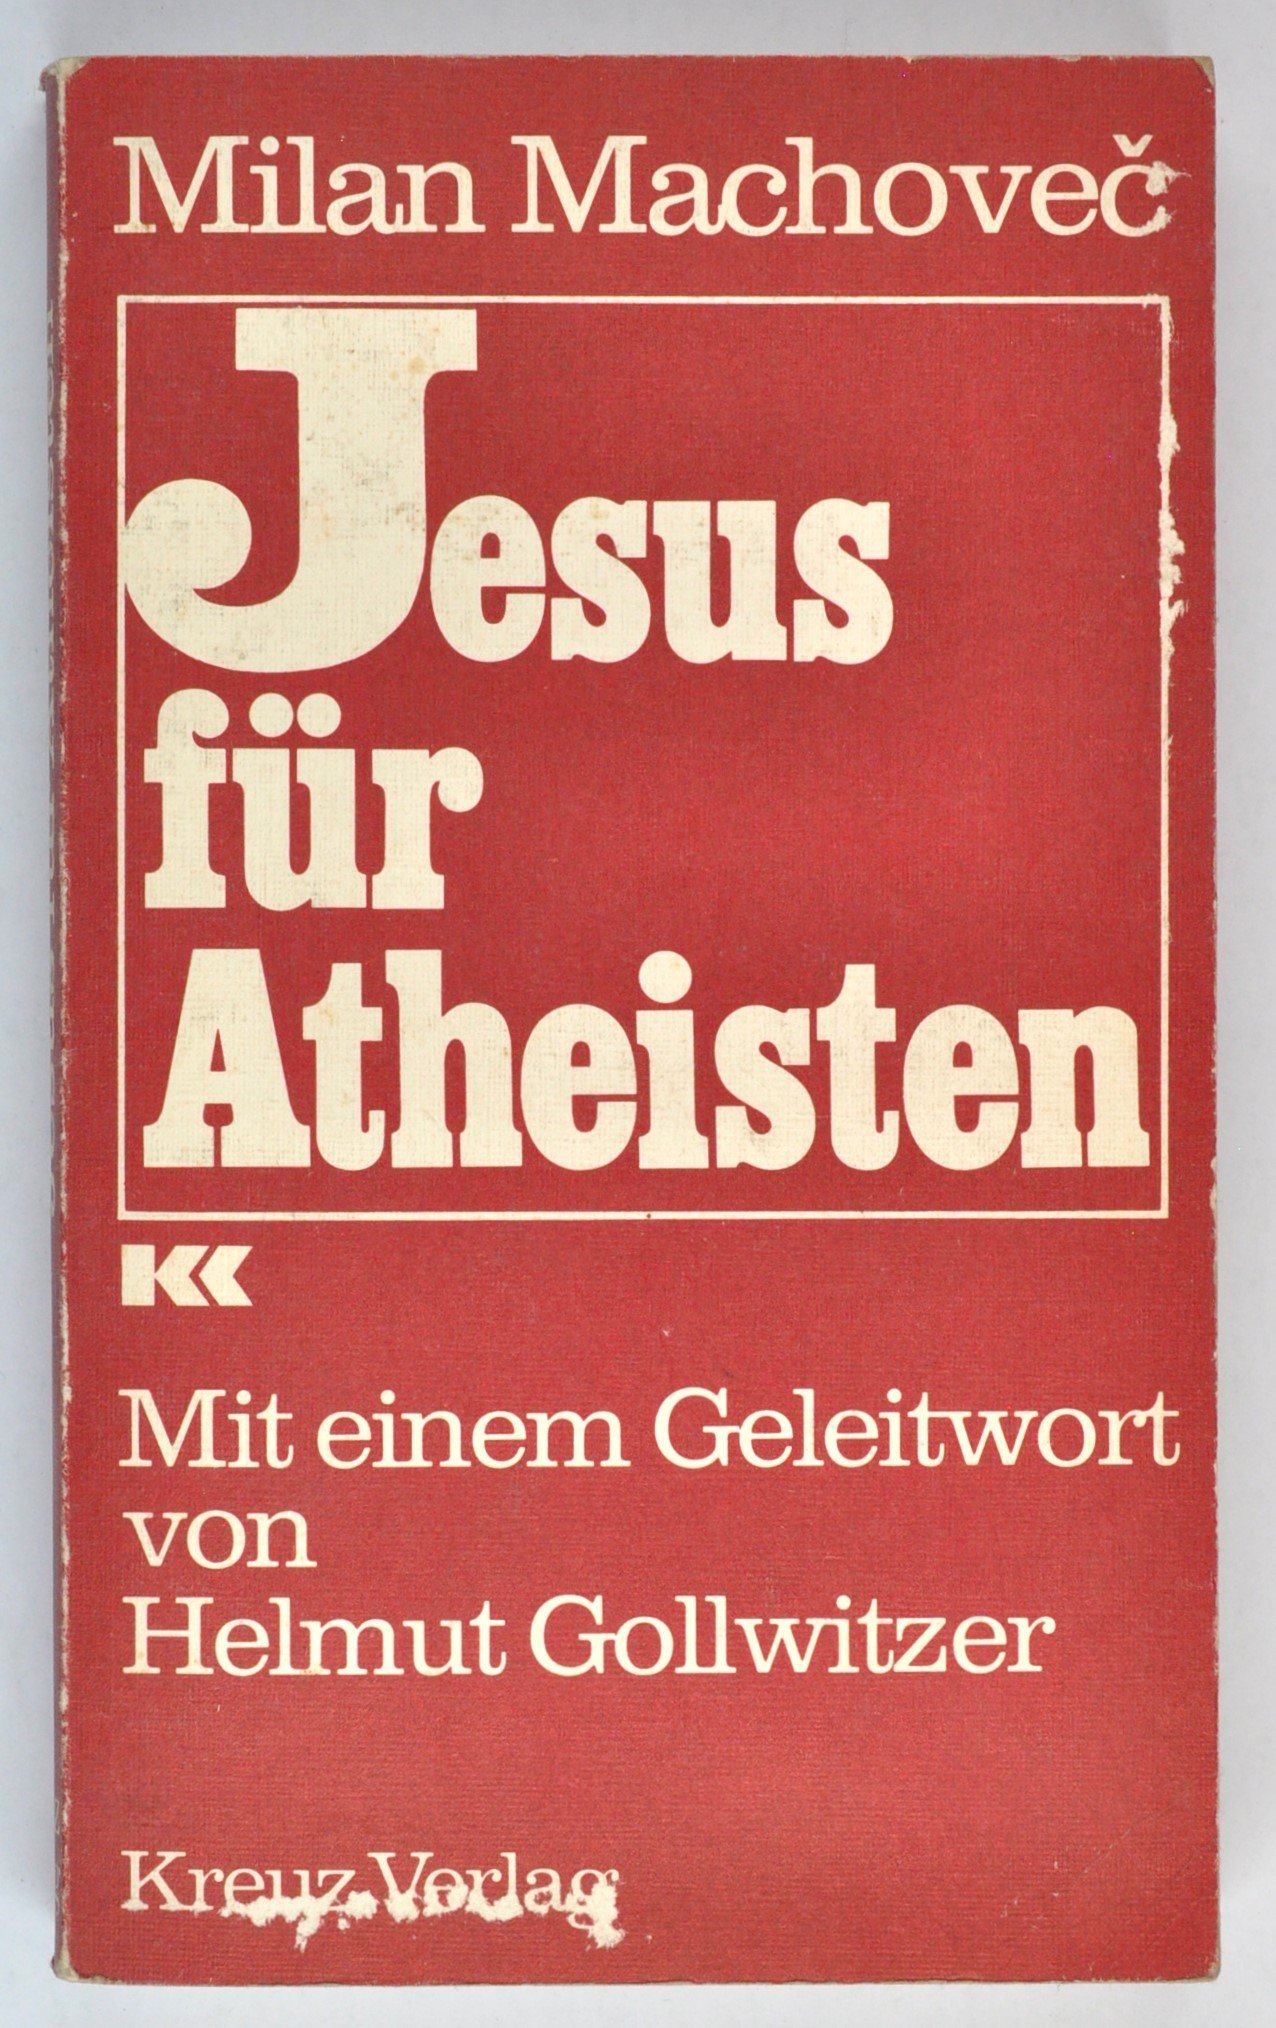 Buch: Milan Machoveč: Jesus für Atheisten. Mit einem Nachwort von Helmut Gollwitzer, 5. Auflage, Stuttgart 1977 (DDR Geschichtsmuseum im Dokumentationszentrum Perleberg CC BY-SA)